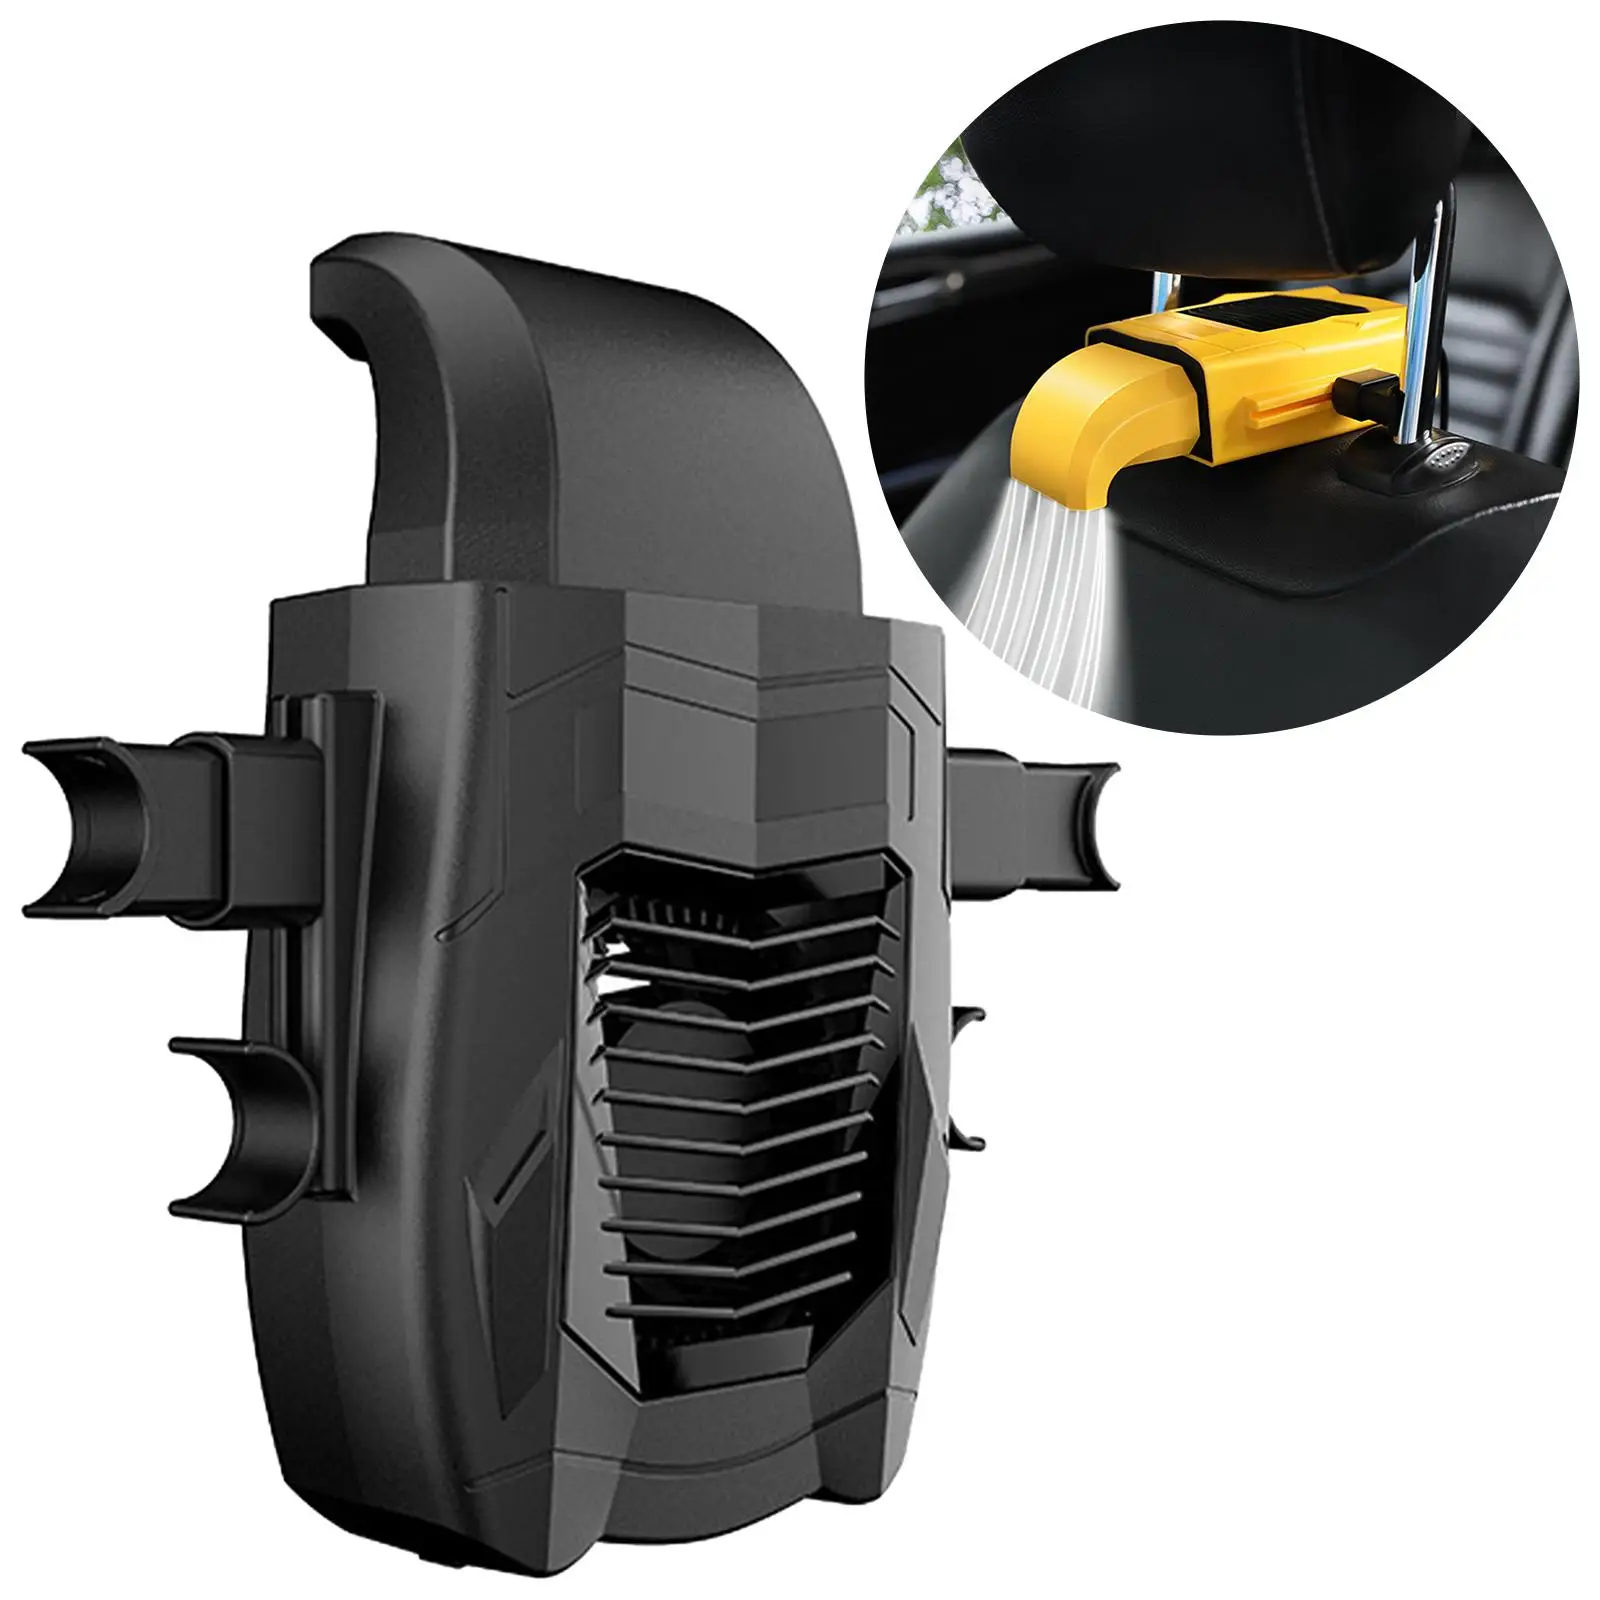 Automobile Car Seat Back Cooling Fan USB 12V 24V Practical Universal 5 